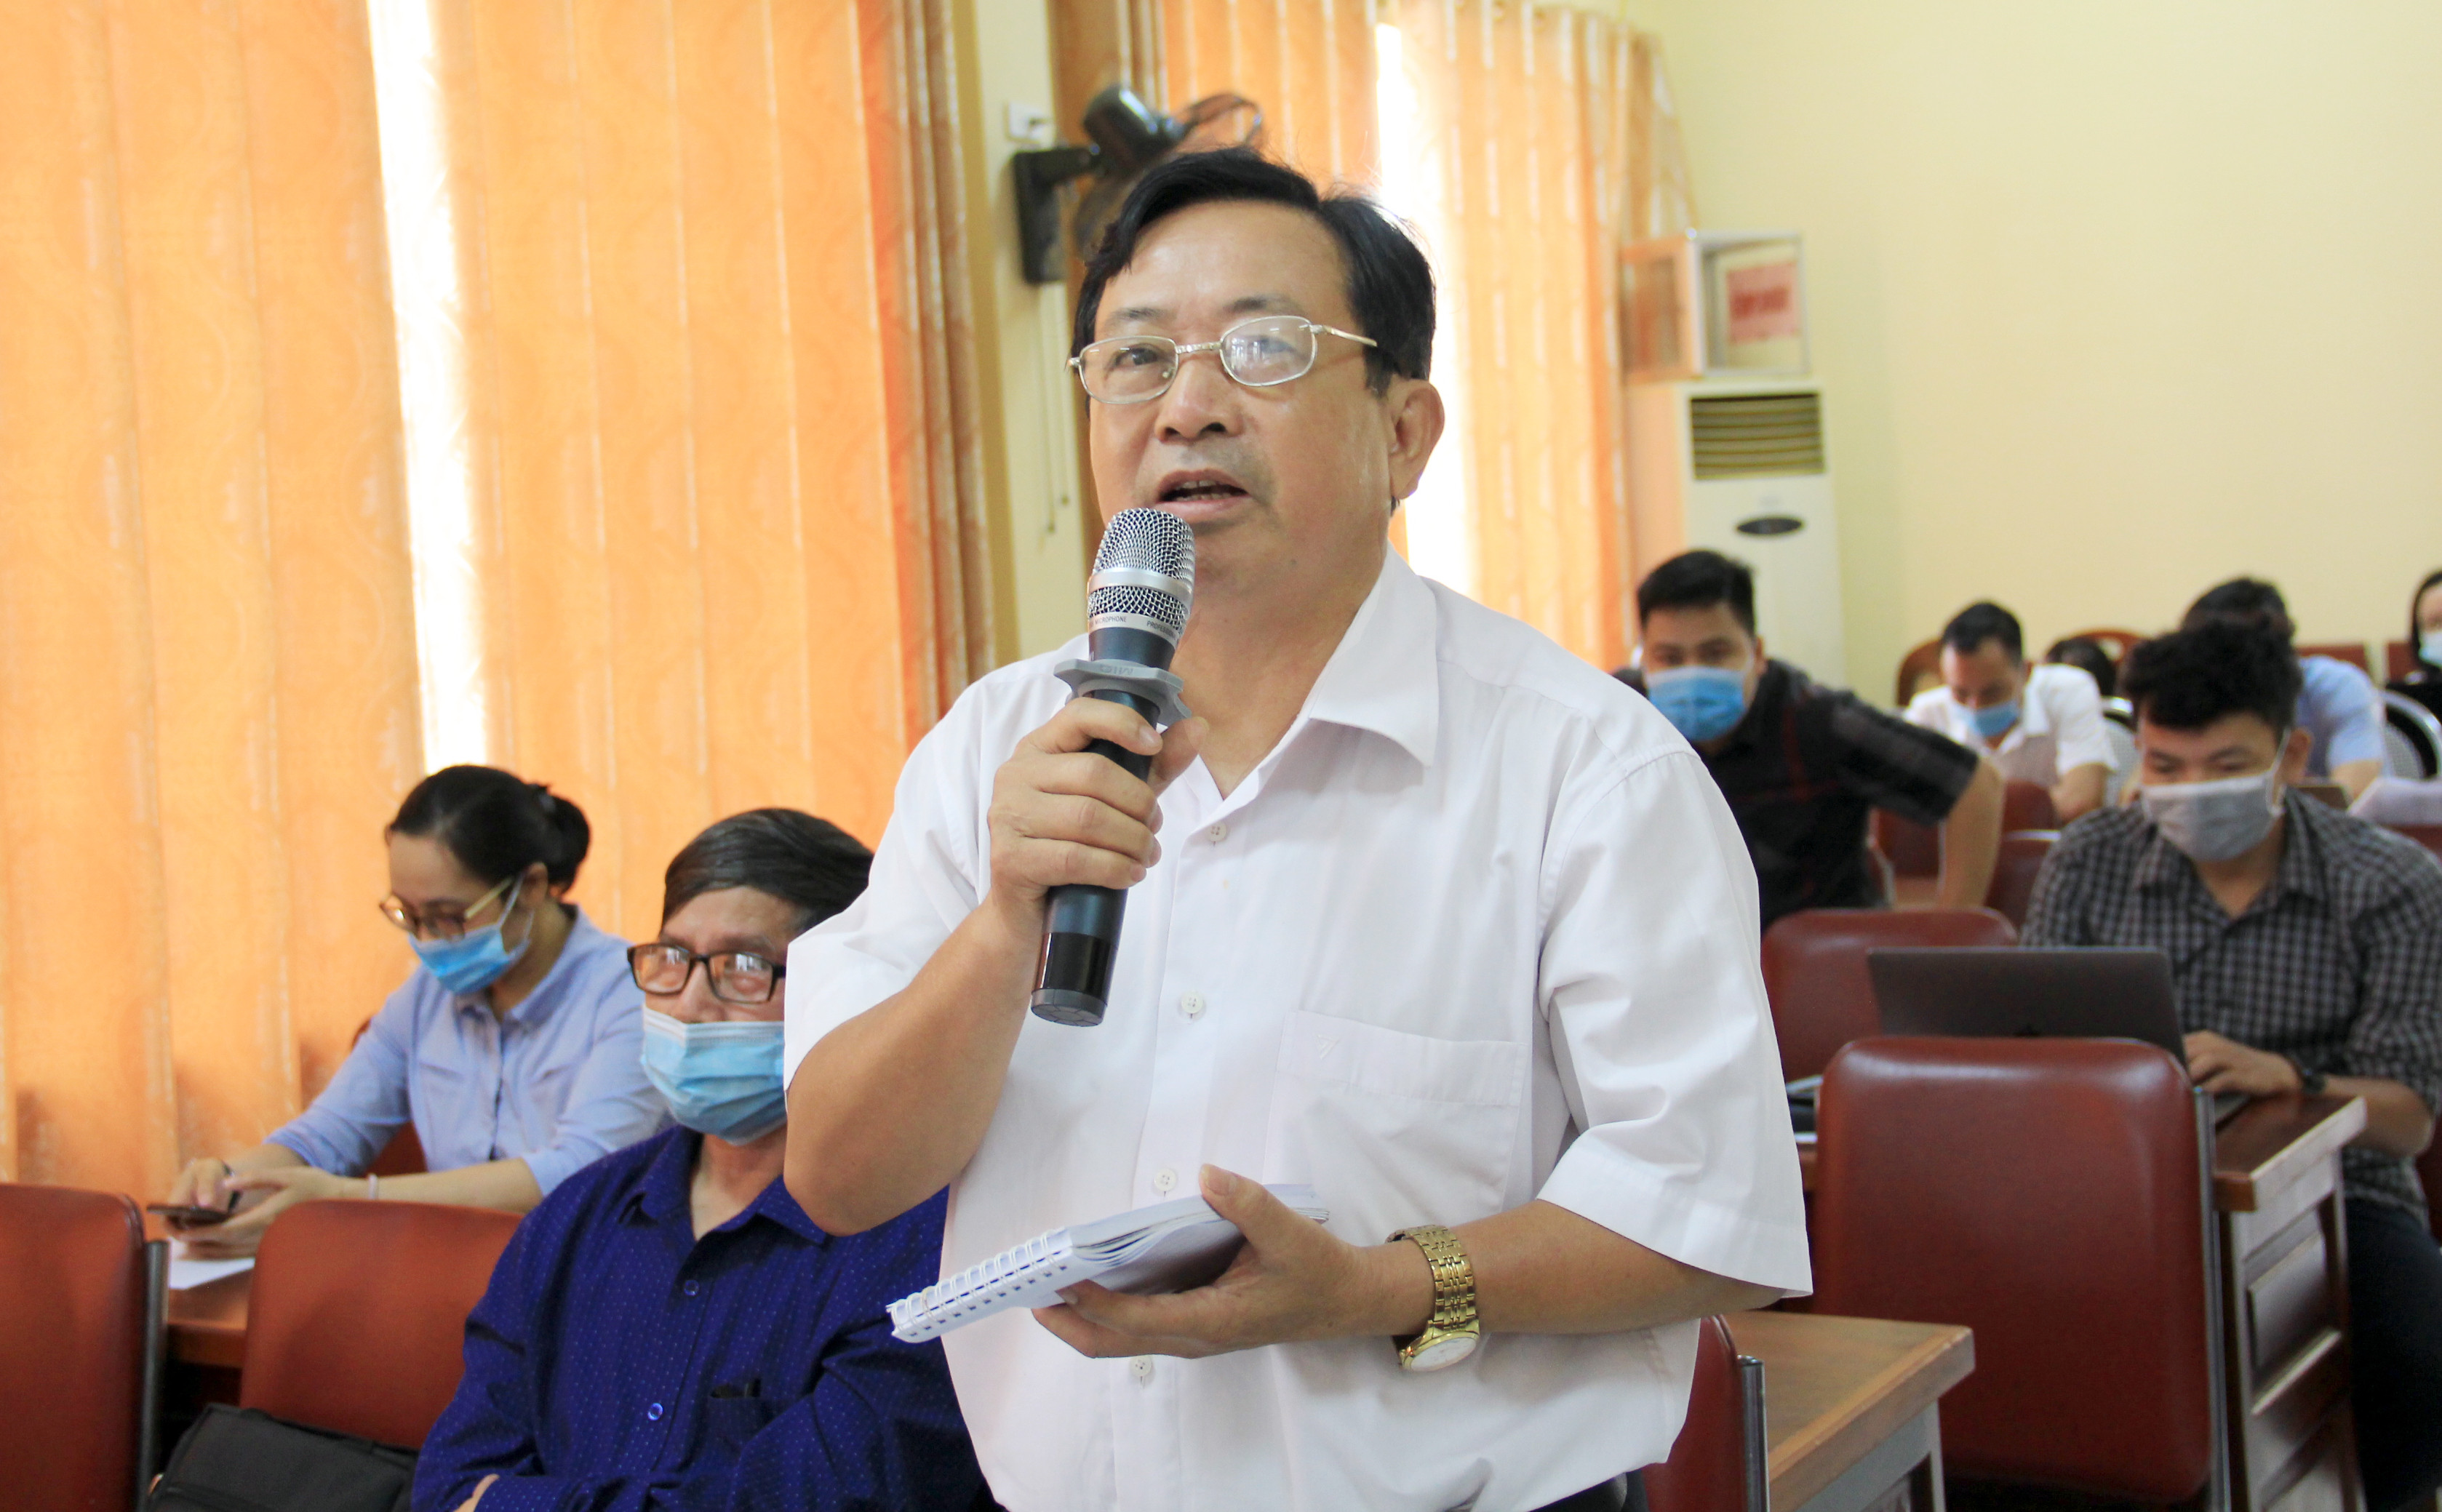 Nhà báo Trần Duy Ngoãn đóng góp ý kiến tại hội nghị. Ảnh: Thanh Quỳnh